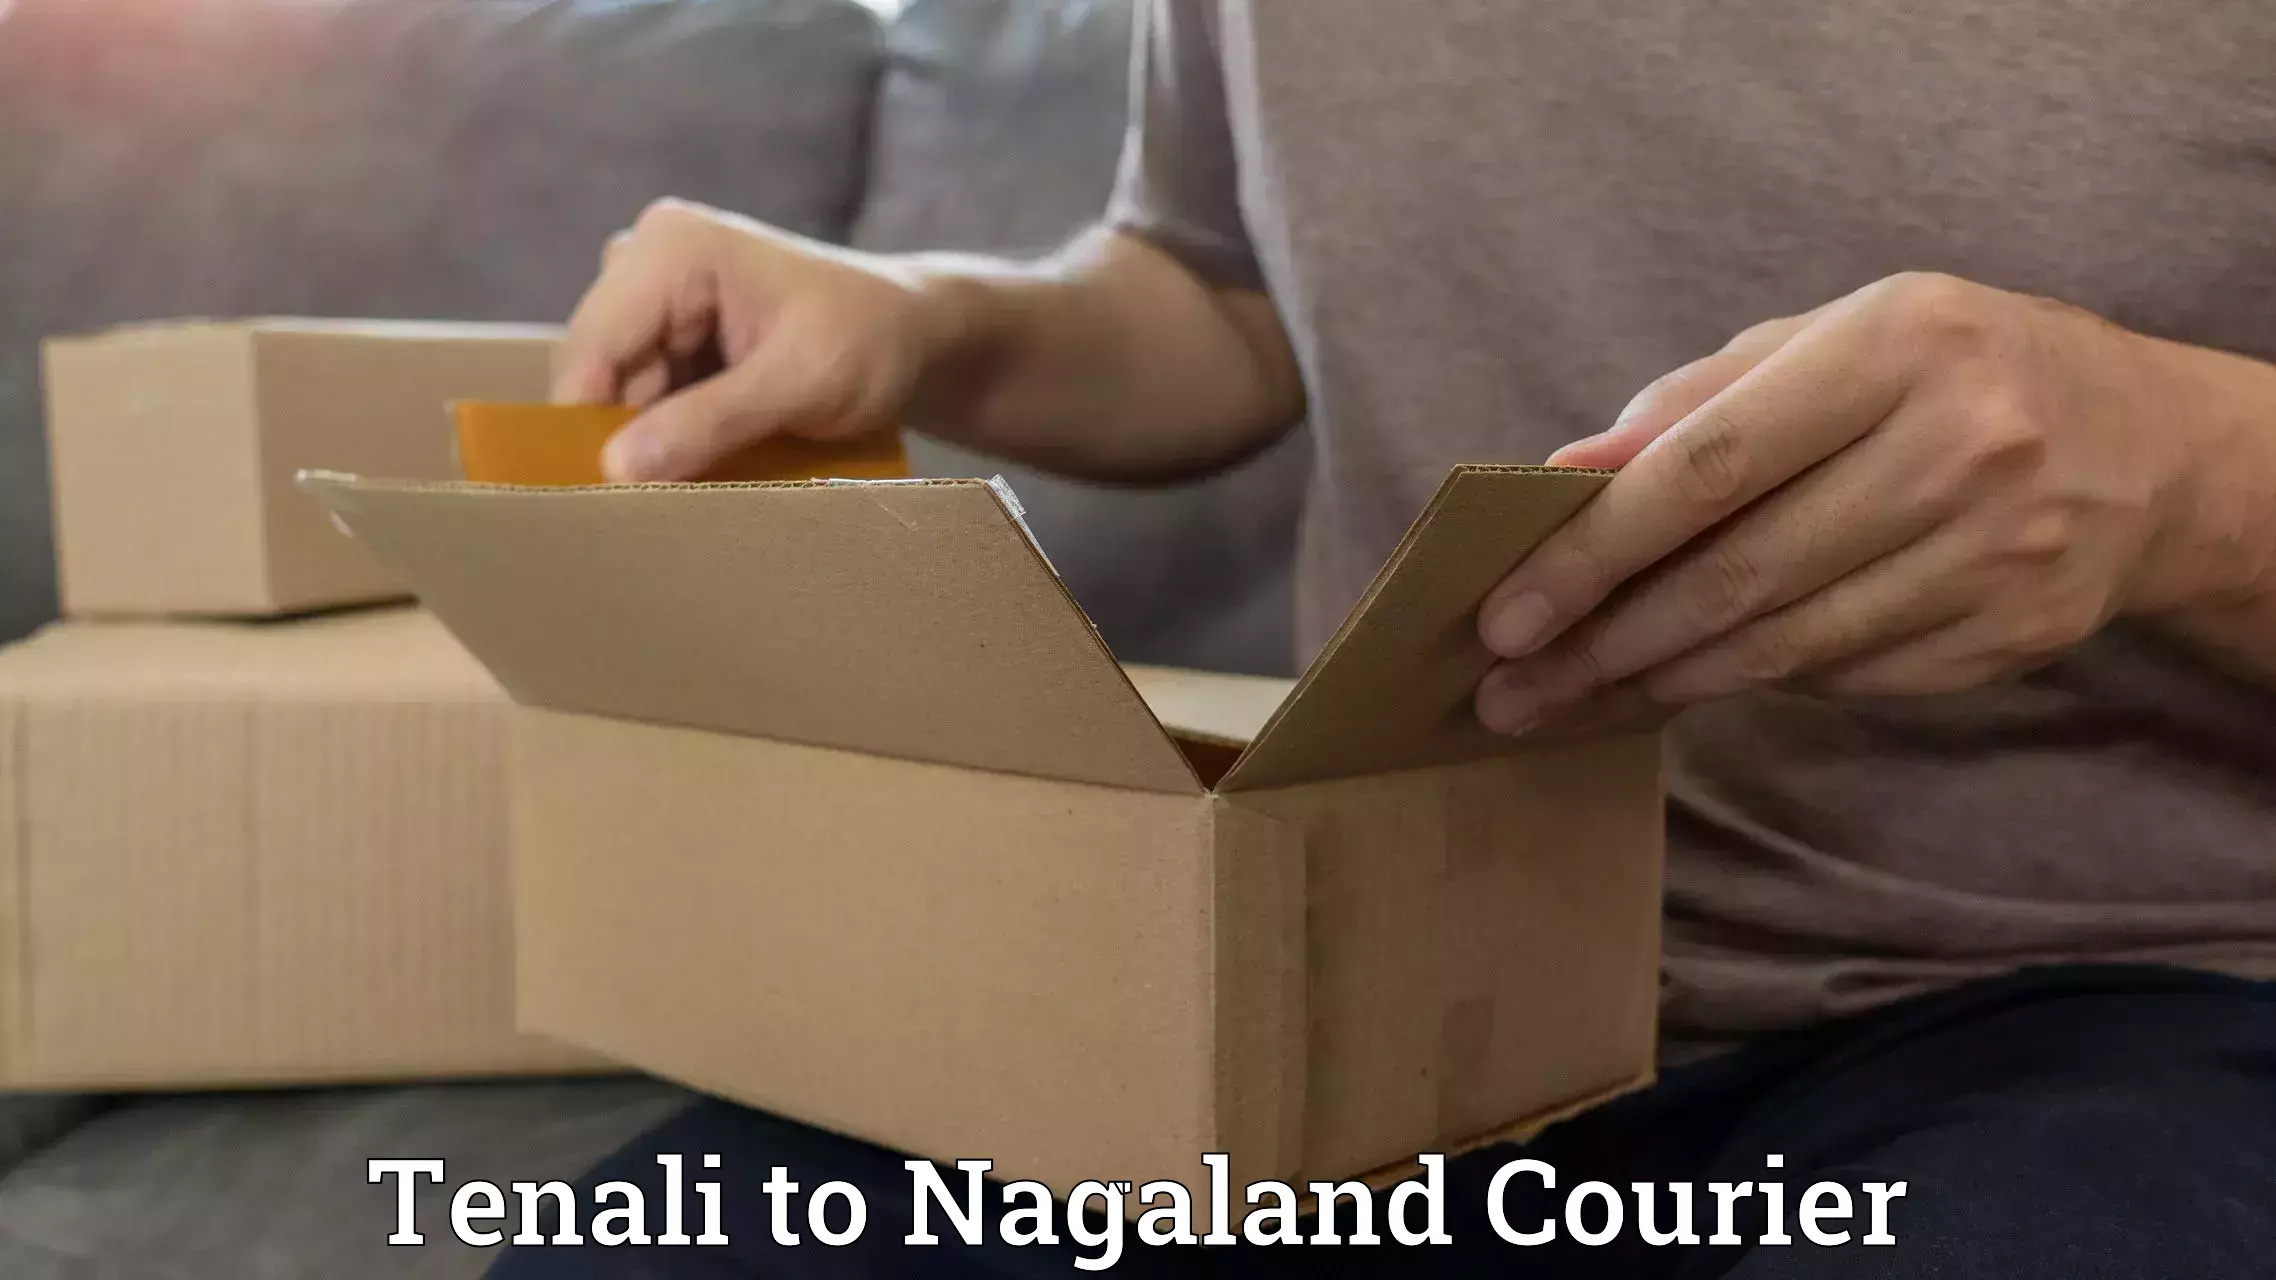 24/7 shipping services Tenali to Nagaland